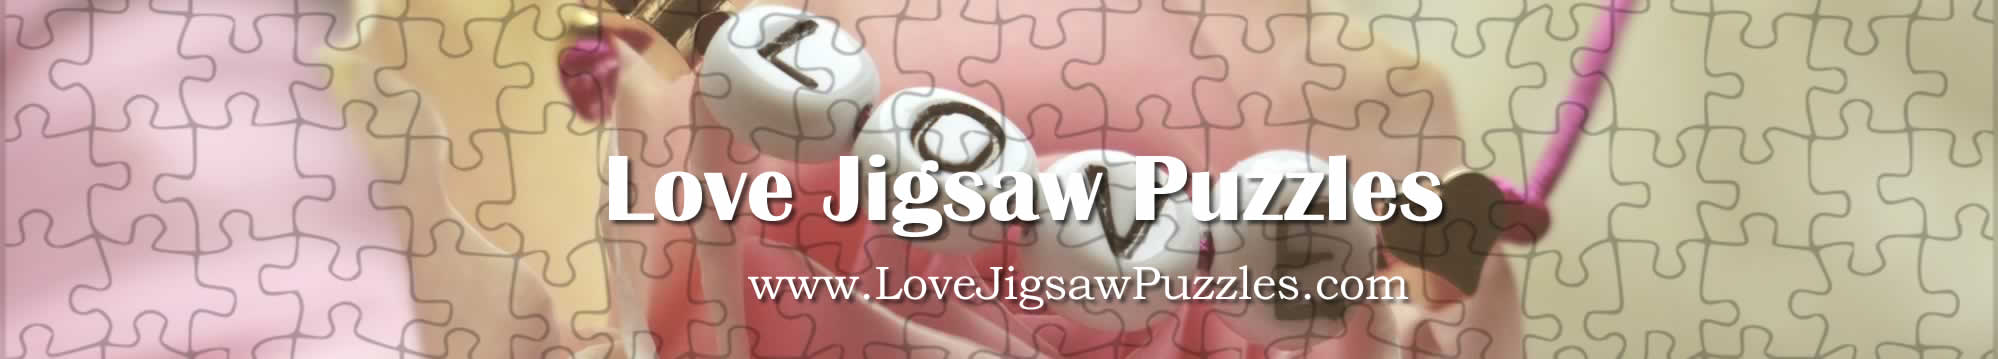 Jigsaw | Dog Jigsaw Puzzles - 30 Free Jigsaw Puzzles